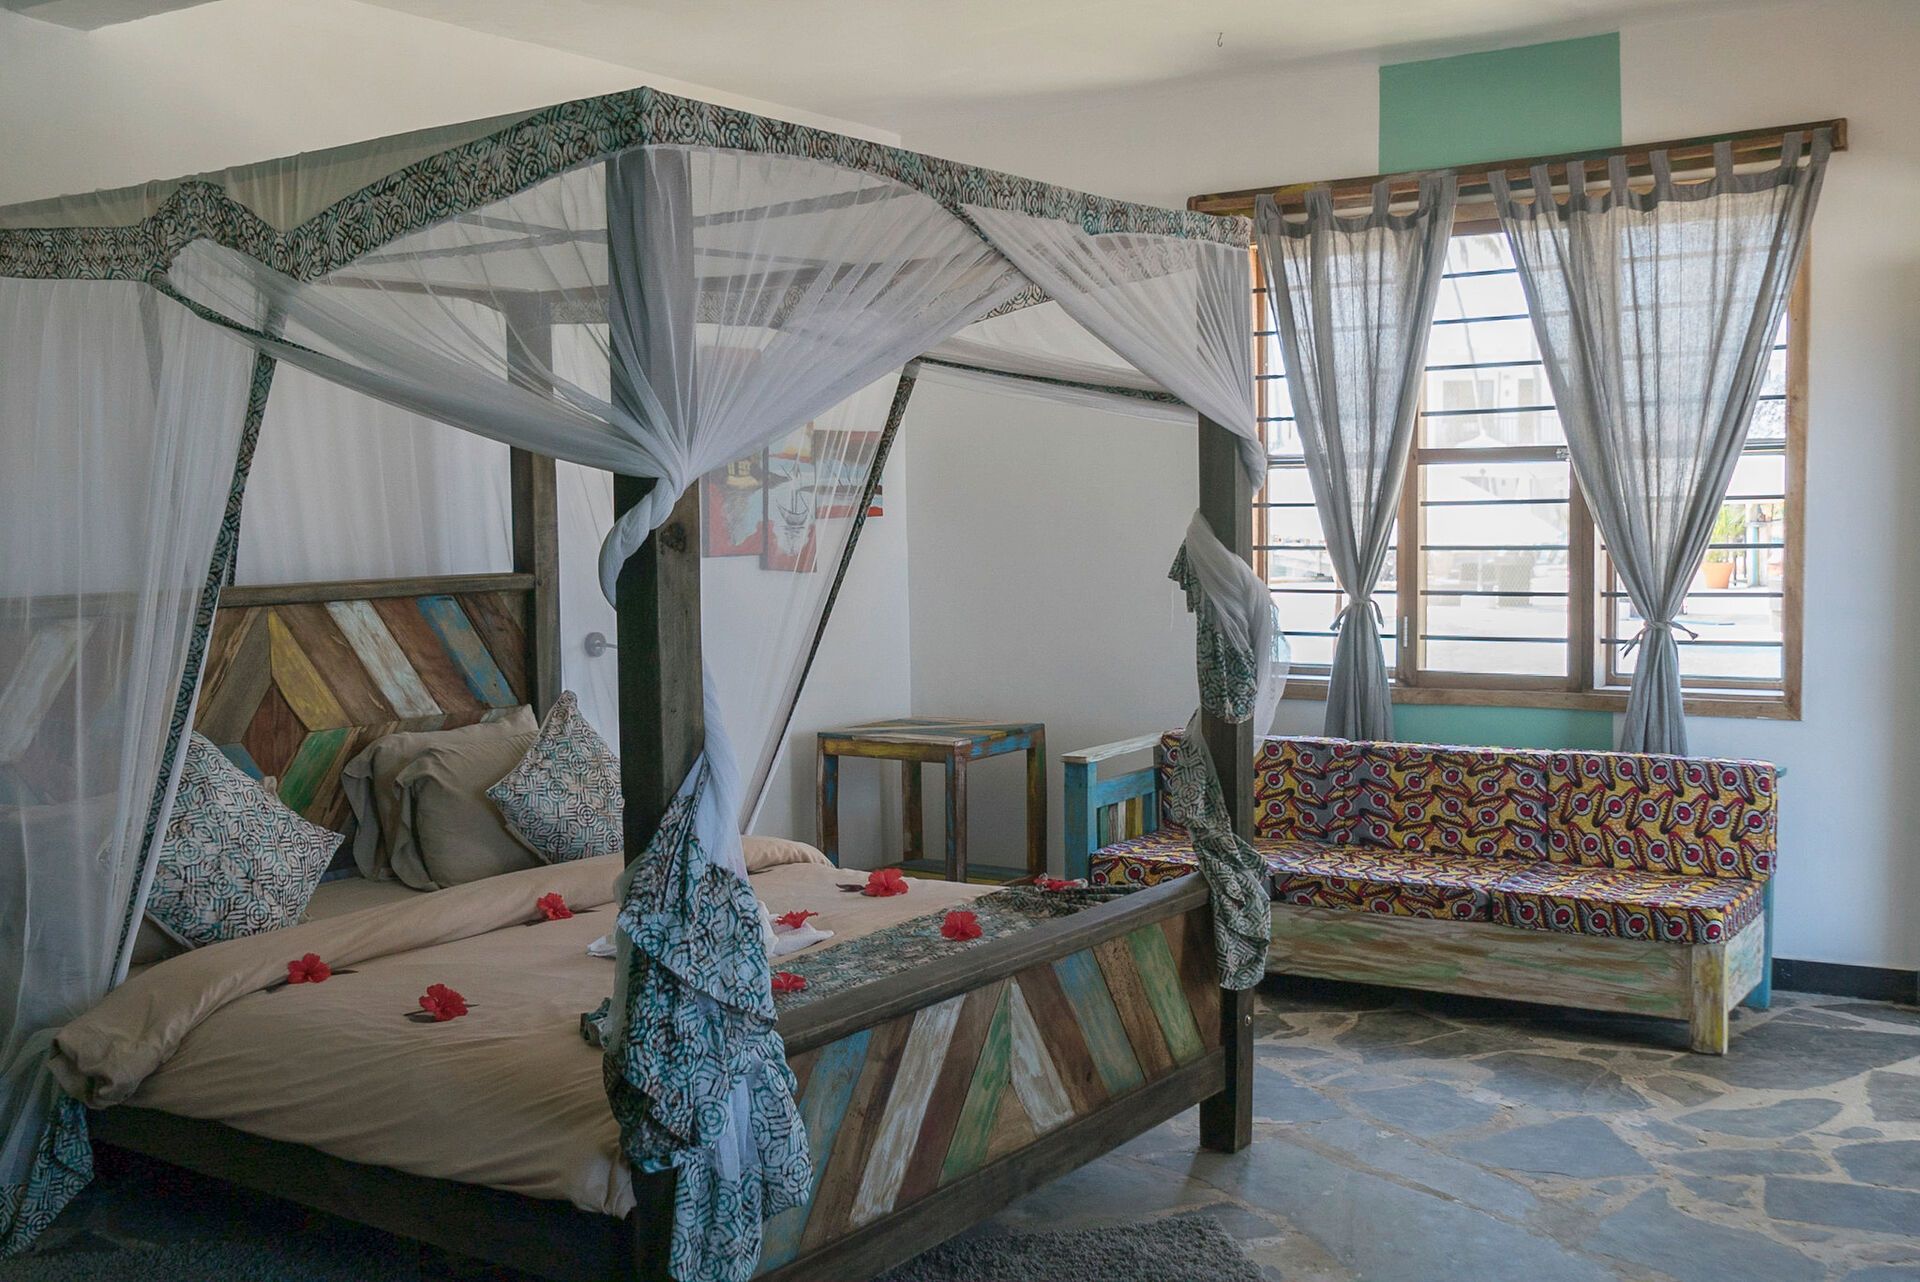 Tanzanie - Zanzibar - Hotel Zanzibar Bay Resort 4*